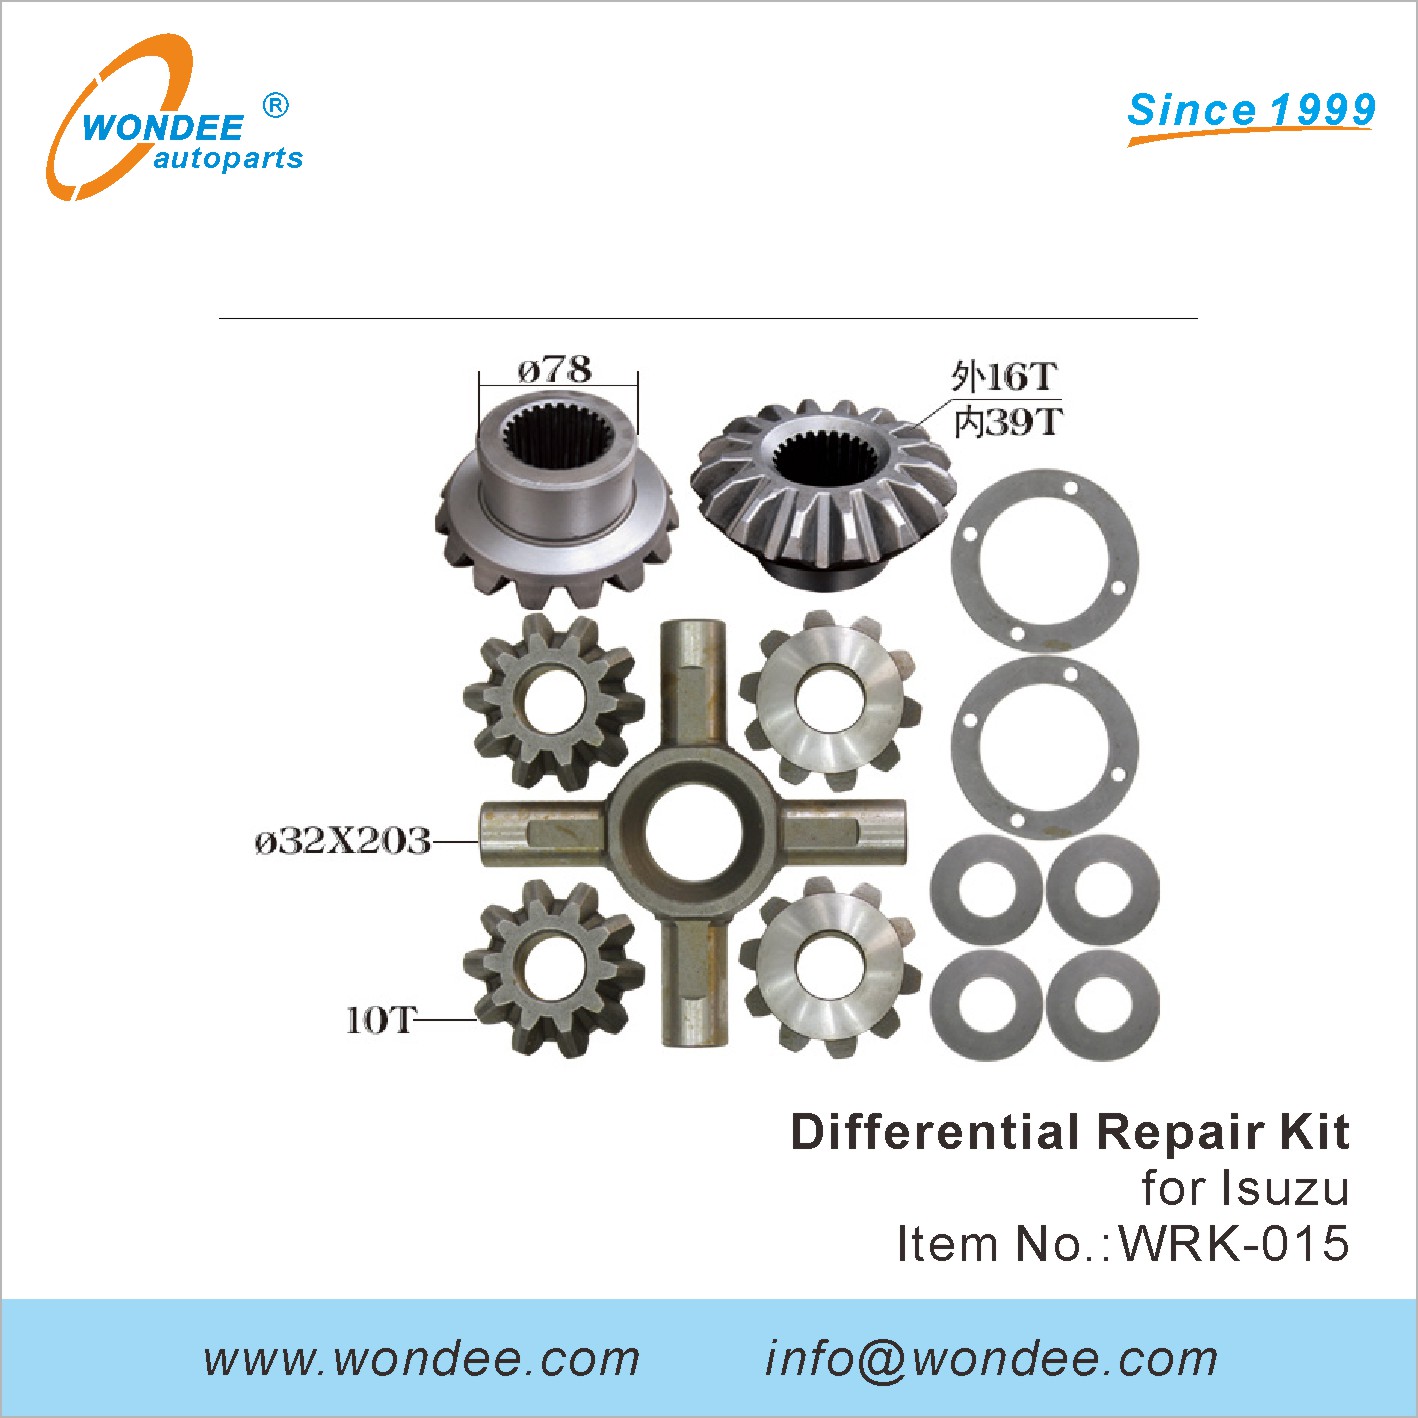 WONDEE differential repair kit (15)